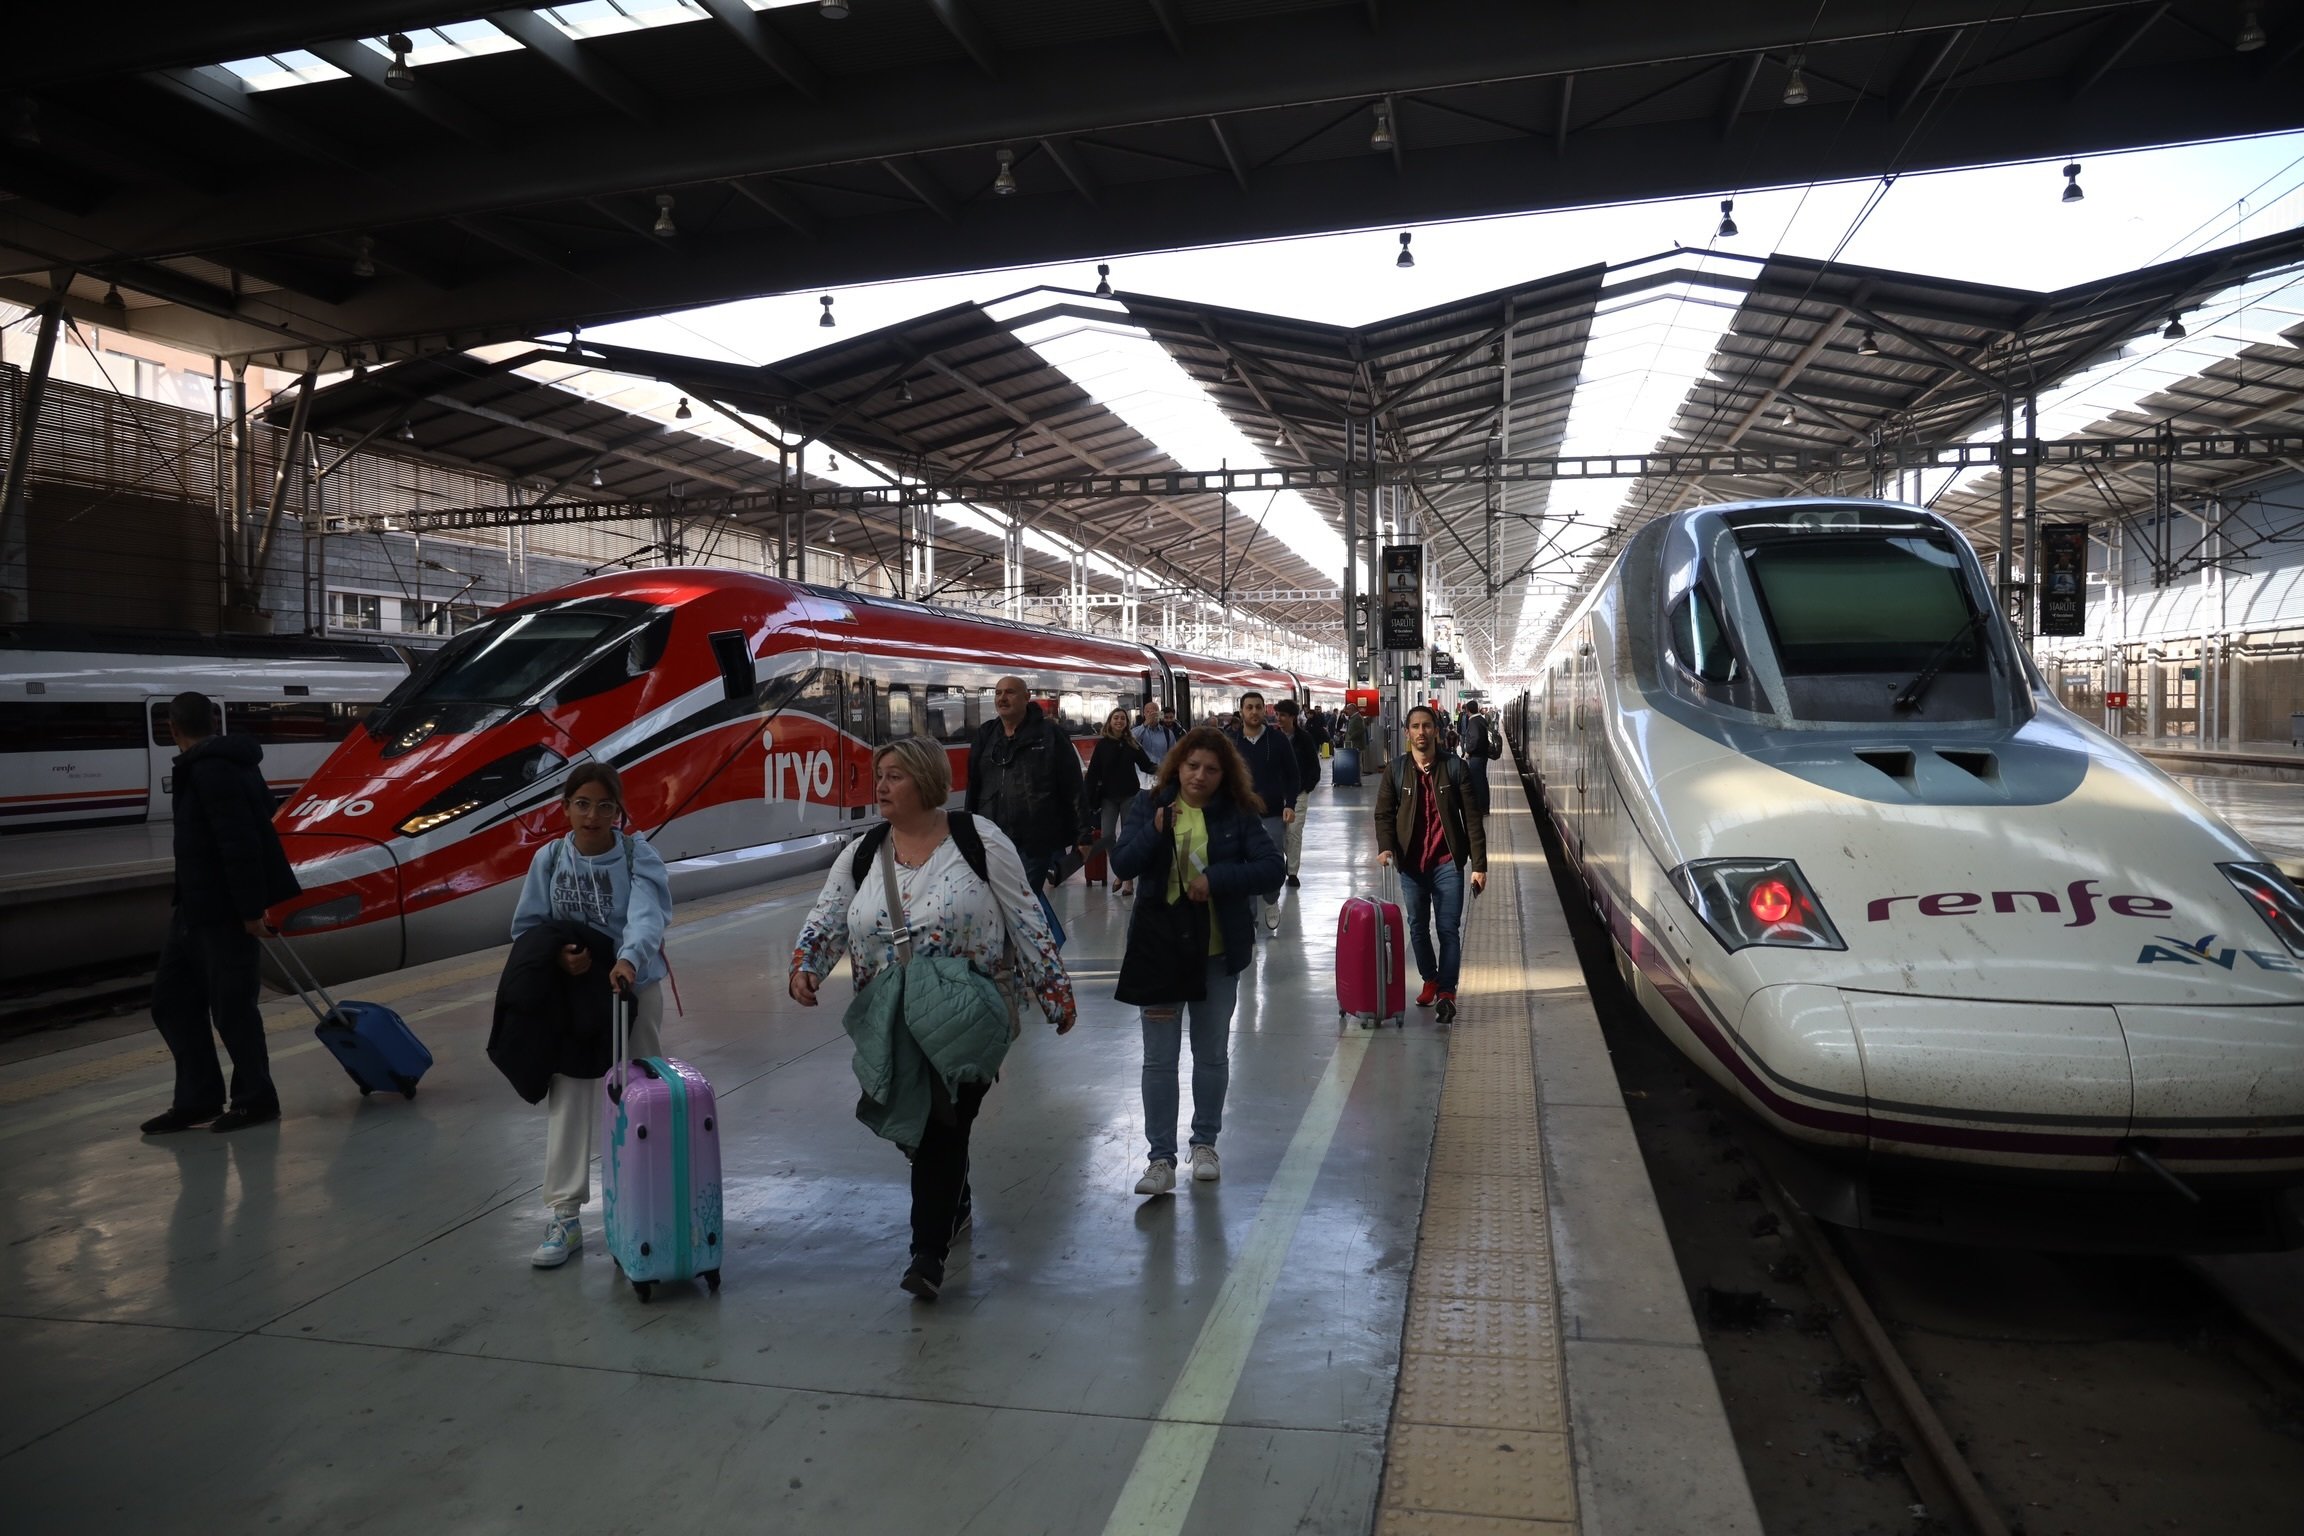 El tren Avlo se estrena en Andalucía este mes de junio e Iryo, en Alicante y Tarragona